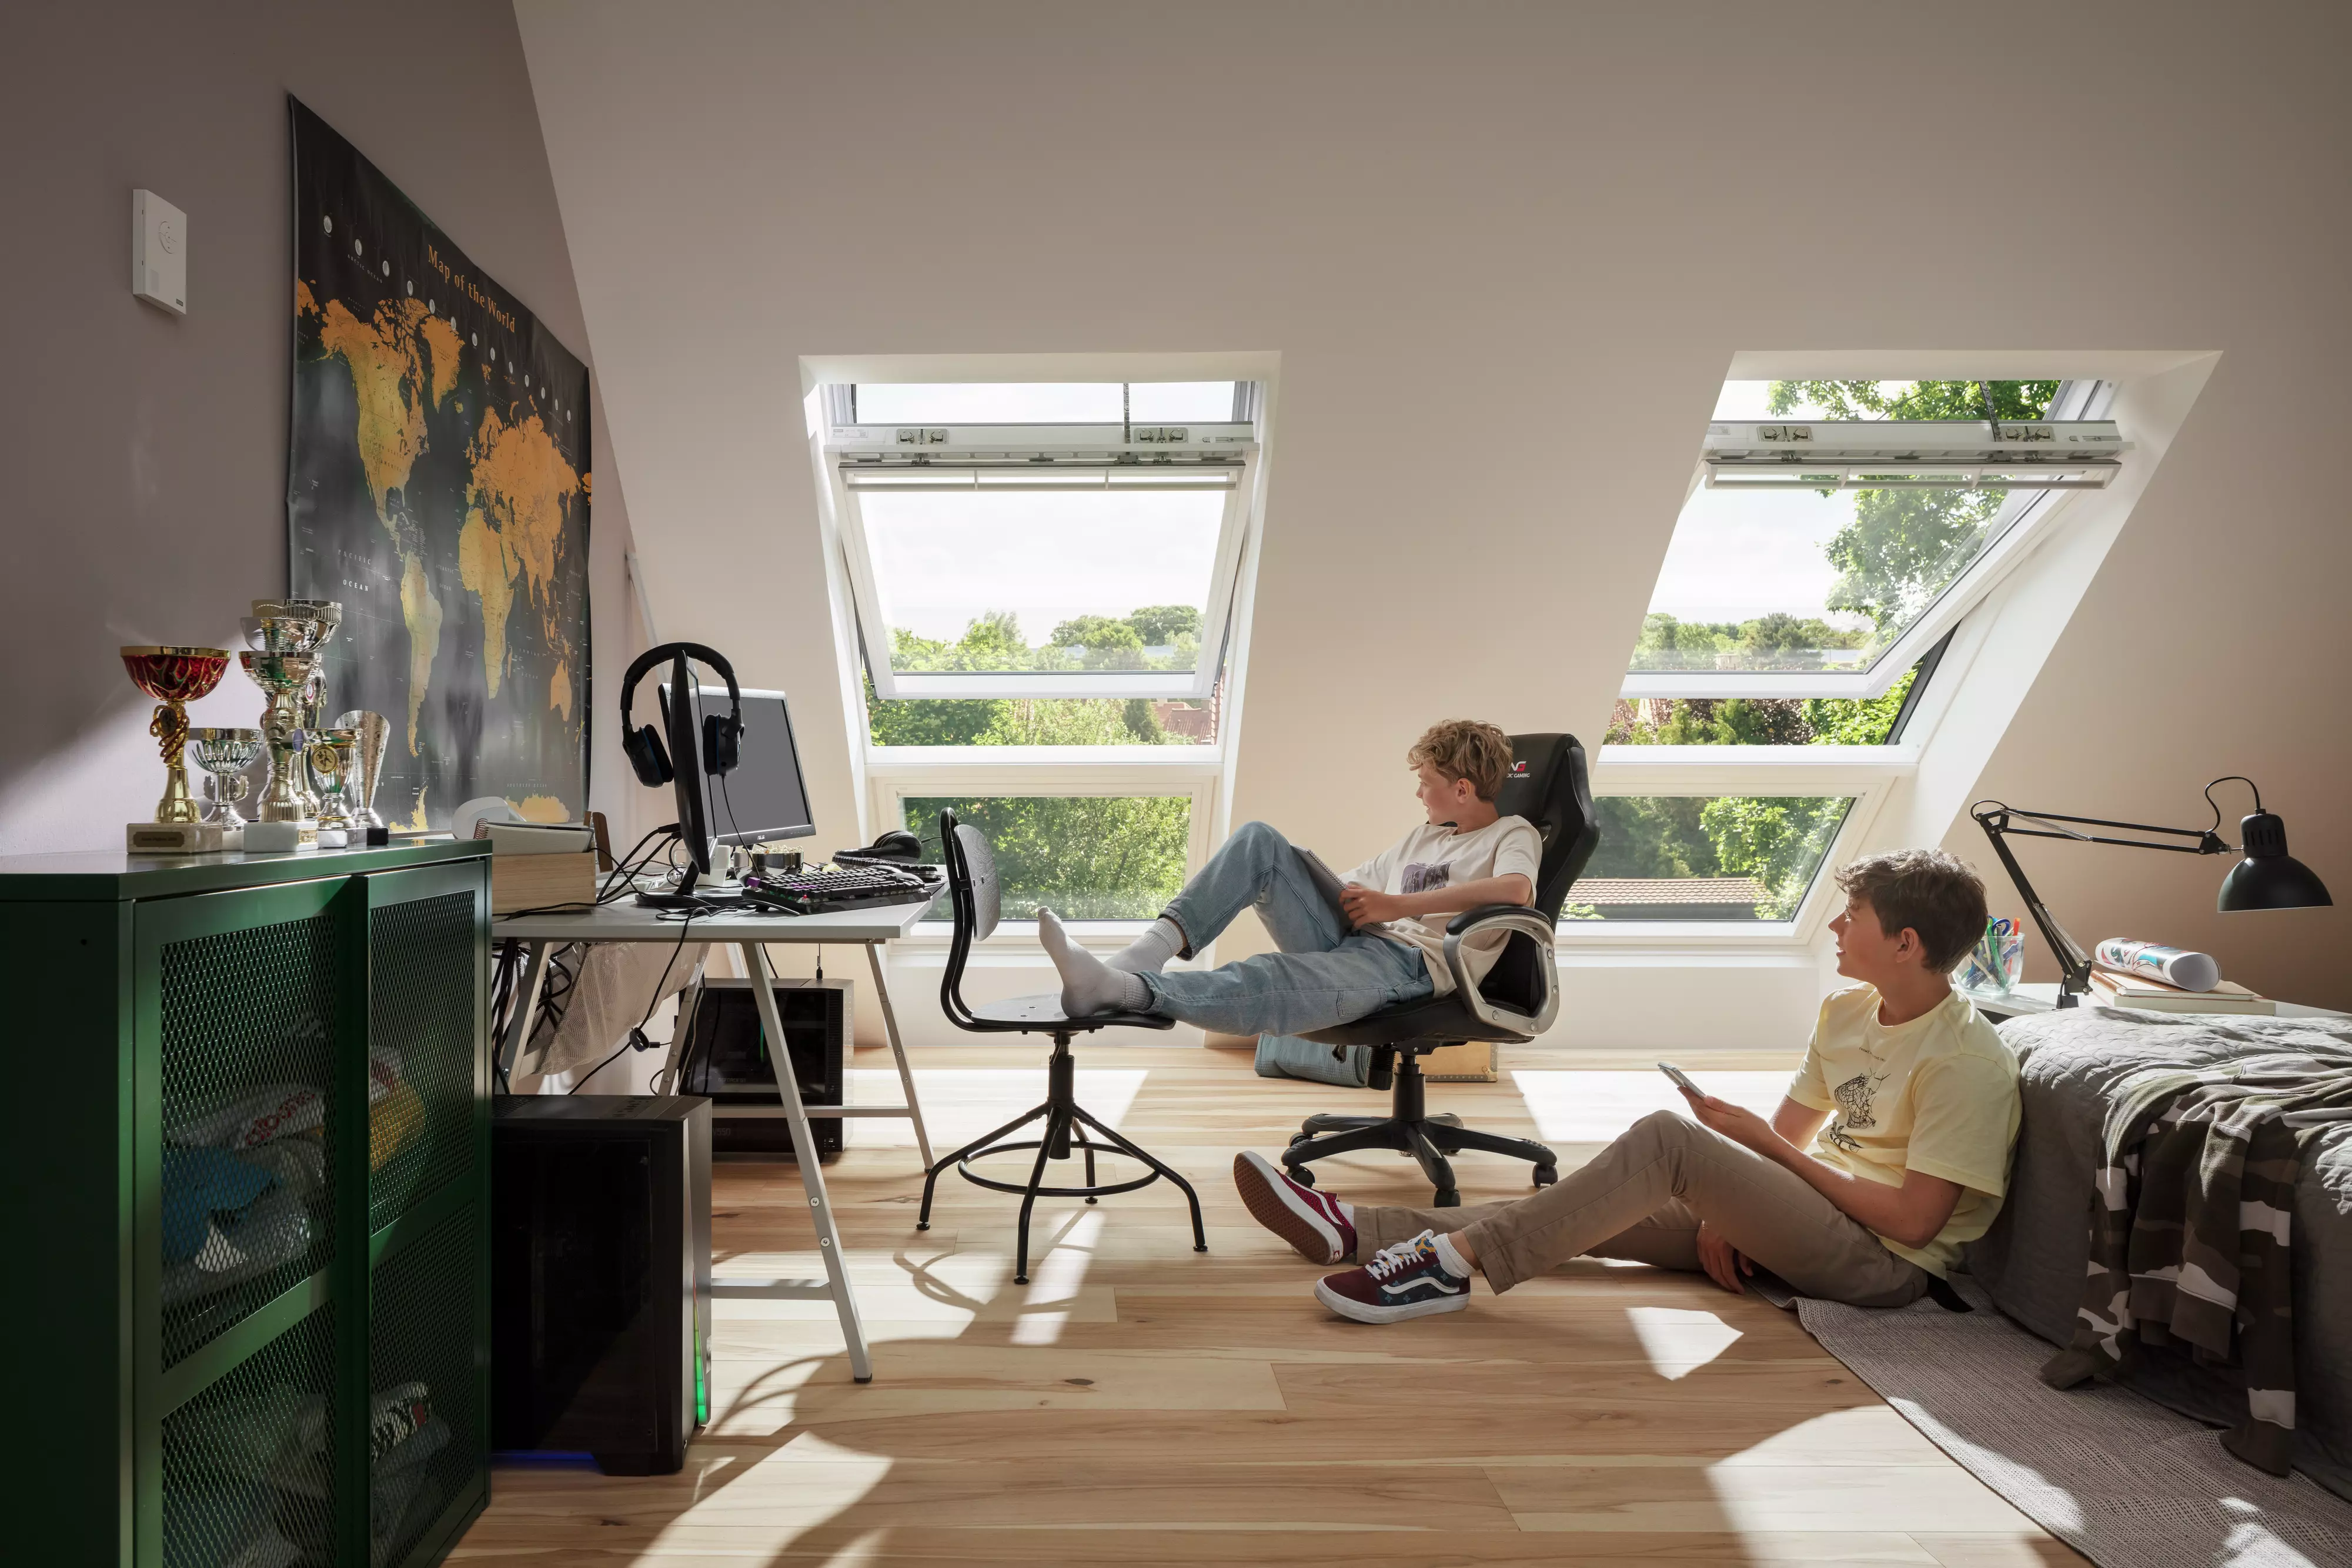 Chambre d'adolescent avec des fenêtres de toit VELUX, un bureau d'étude, un équipement de jeu, et une carte du monde sur le mur.